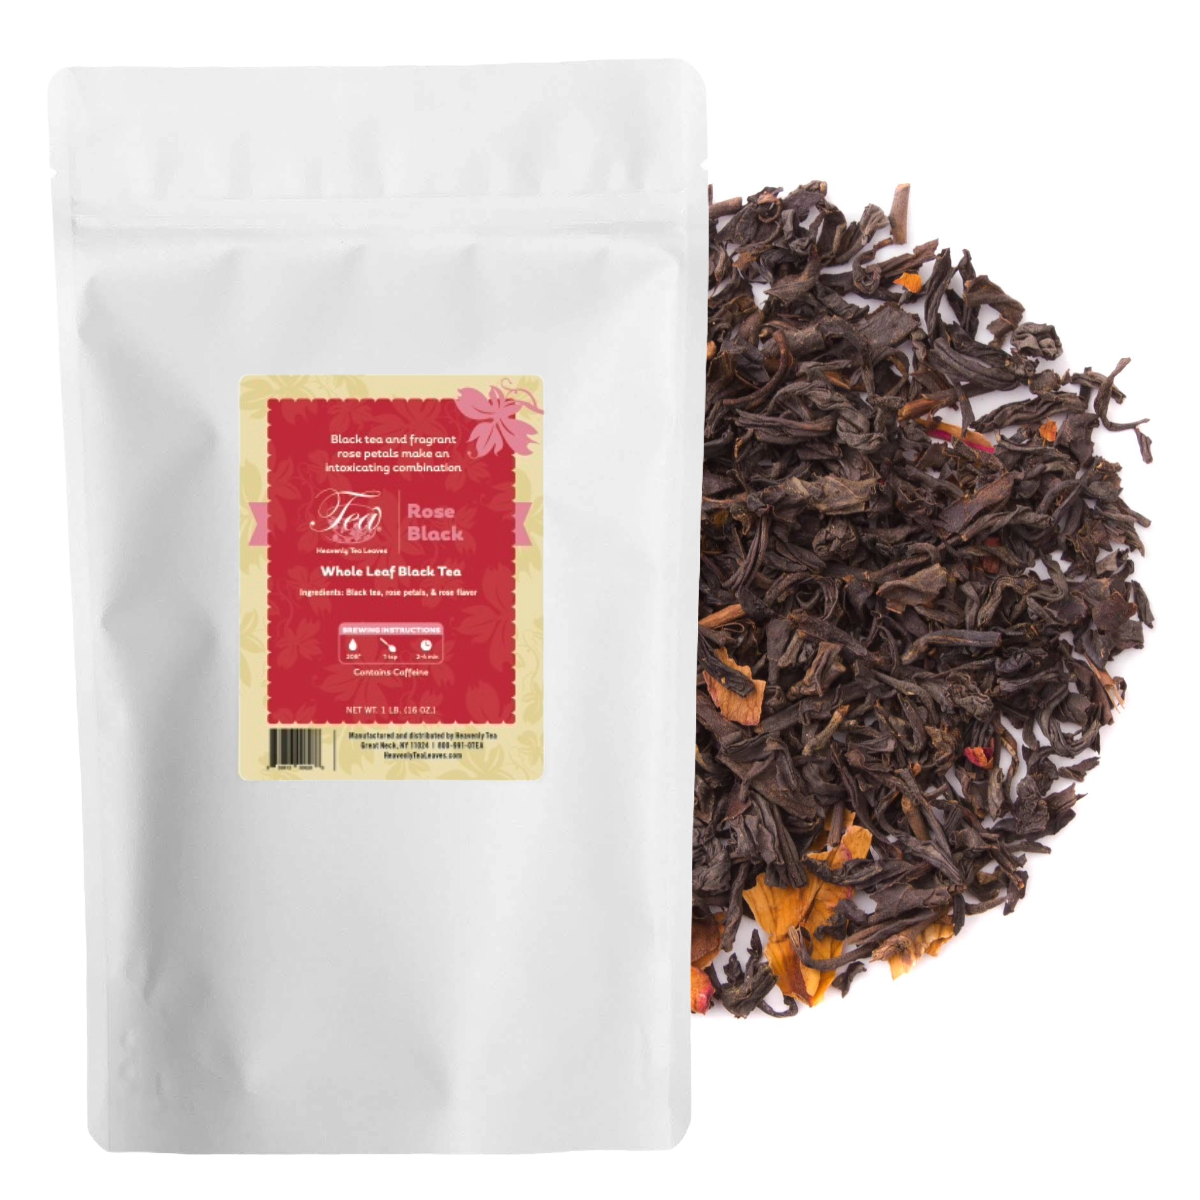 Rose Black, Bulk Loose Leaf Black Tea, 16 Oz. - Premium Tea | Heavenly Tea Leaves